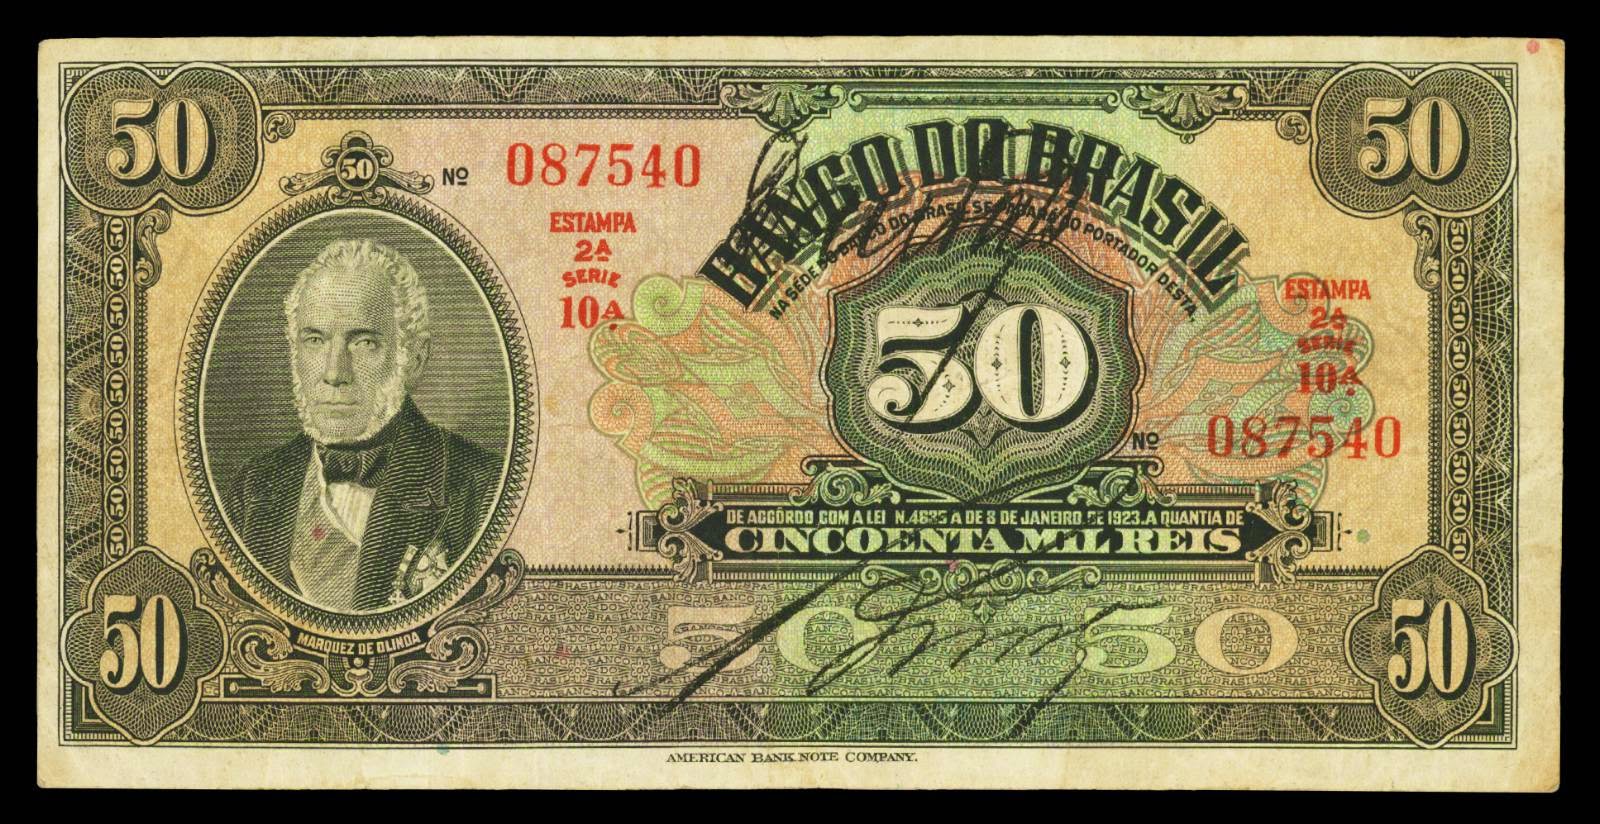 Brazil banknotes 50 Mil Reis bank note 1923 Pedro de Araujo Lima